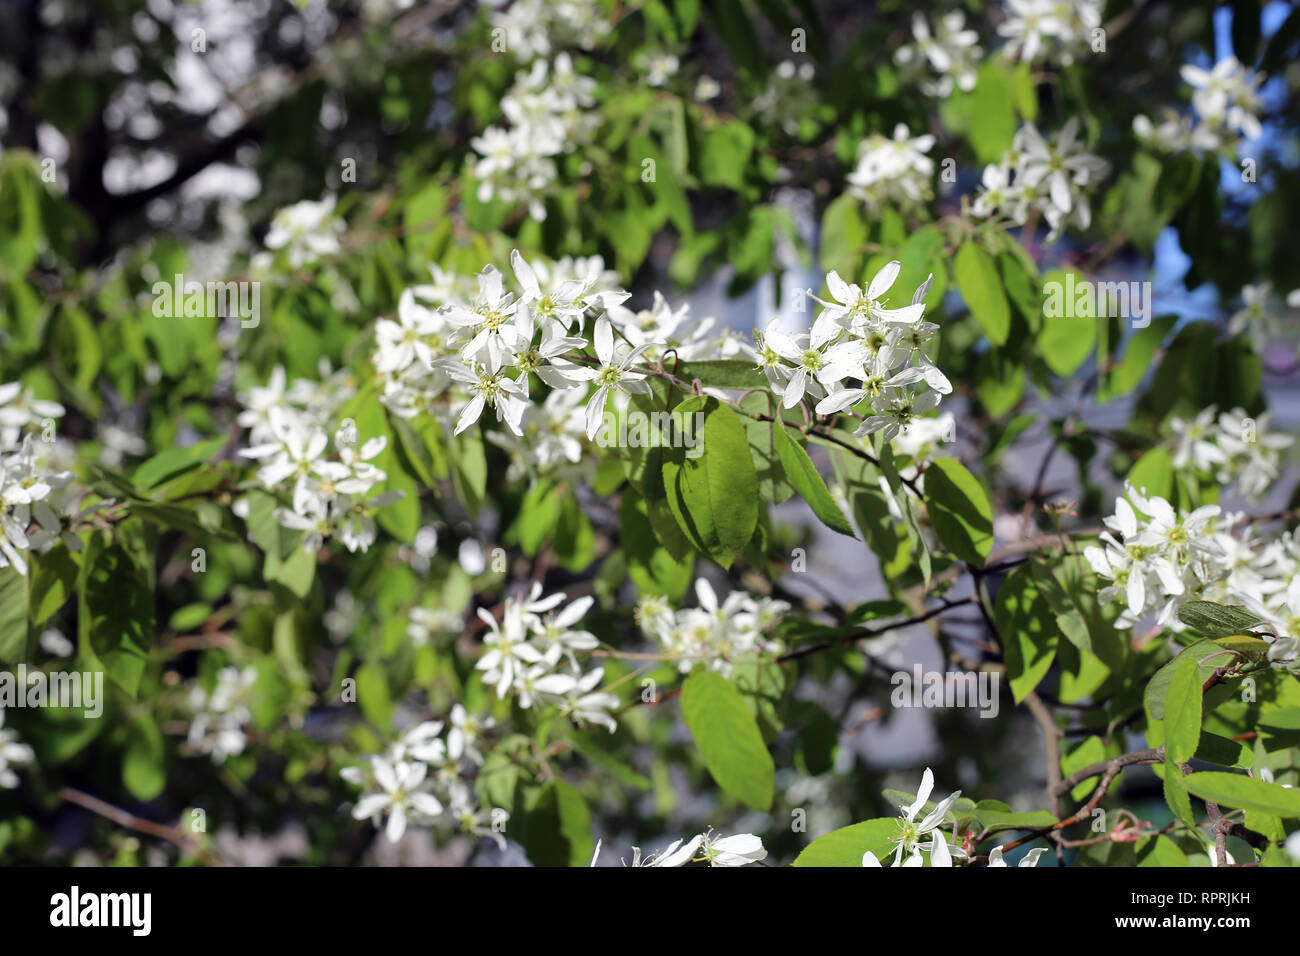 Bianco Fiori di piccole dimensioni in una struttura ad albero. Bellissimi fiori sono stati fotografati durante una soleggiata giornata di primavera in Finlandia. Immagine a colori. Foto Stock